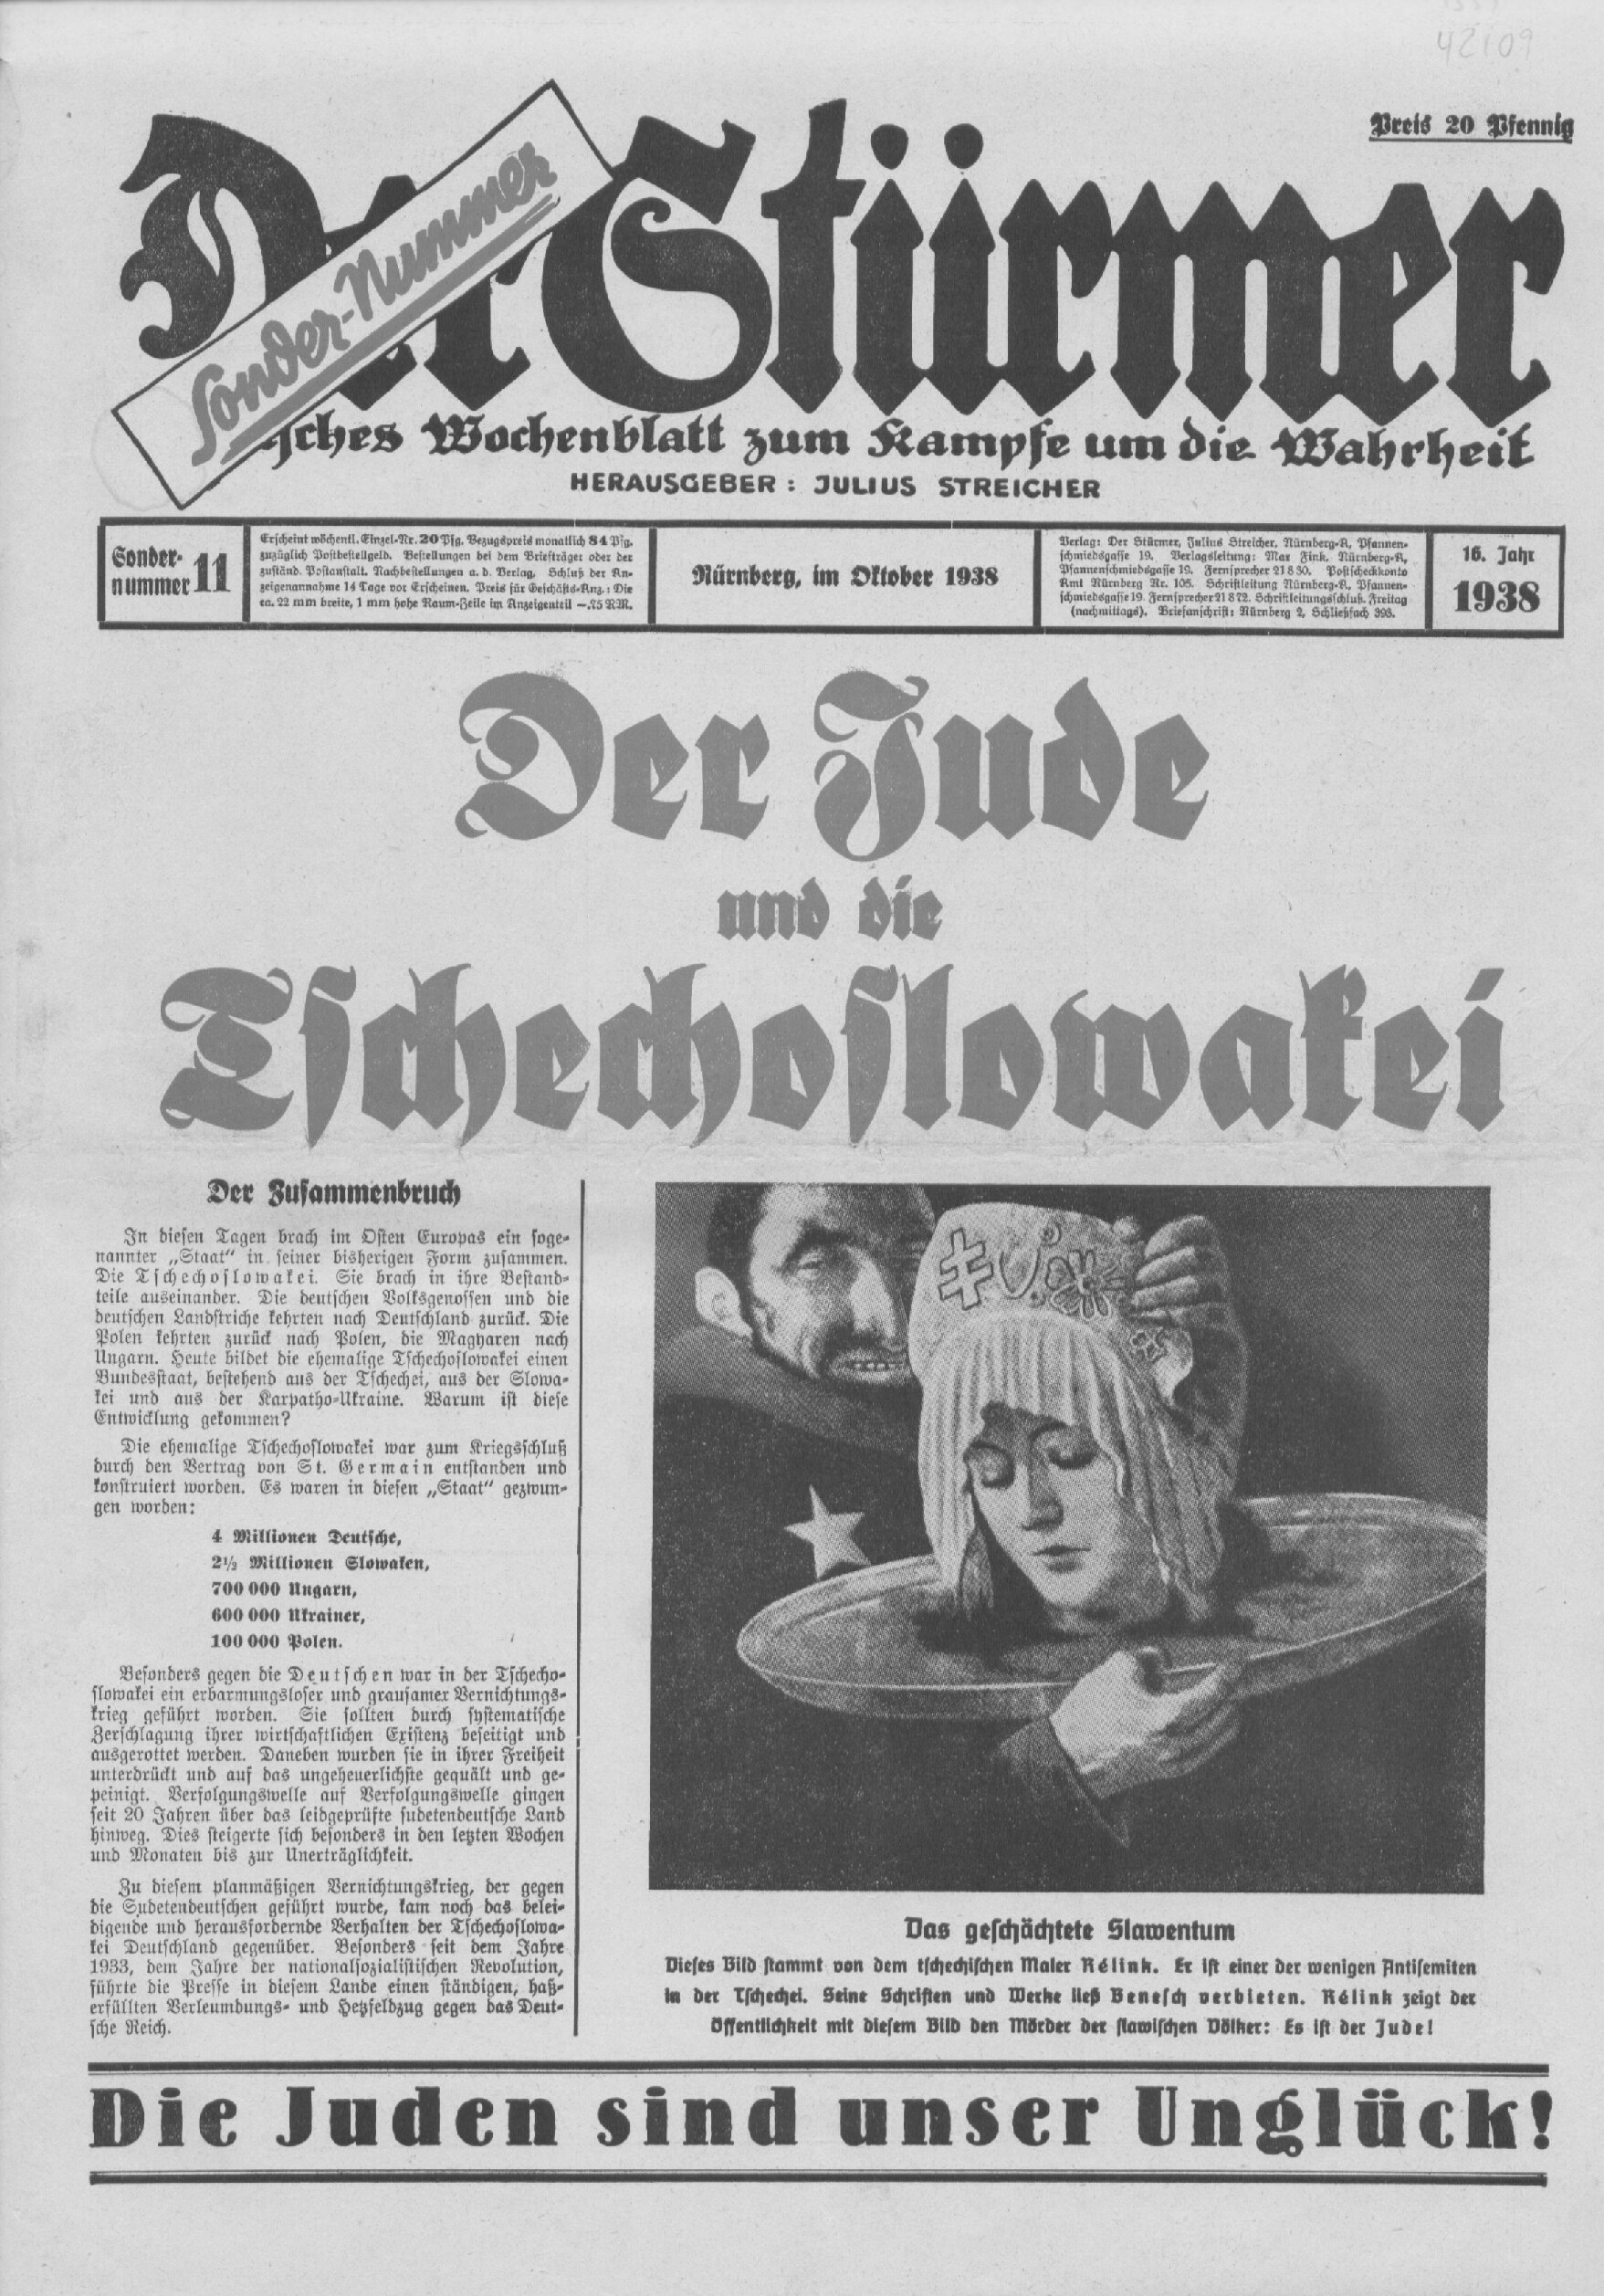 Der Stürmer - 1938 Sondernummer 11 - Der Jude und die Tschechoslowakei